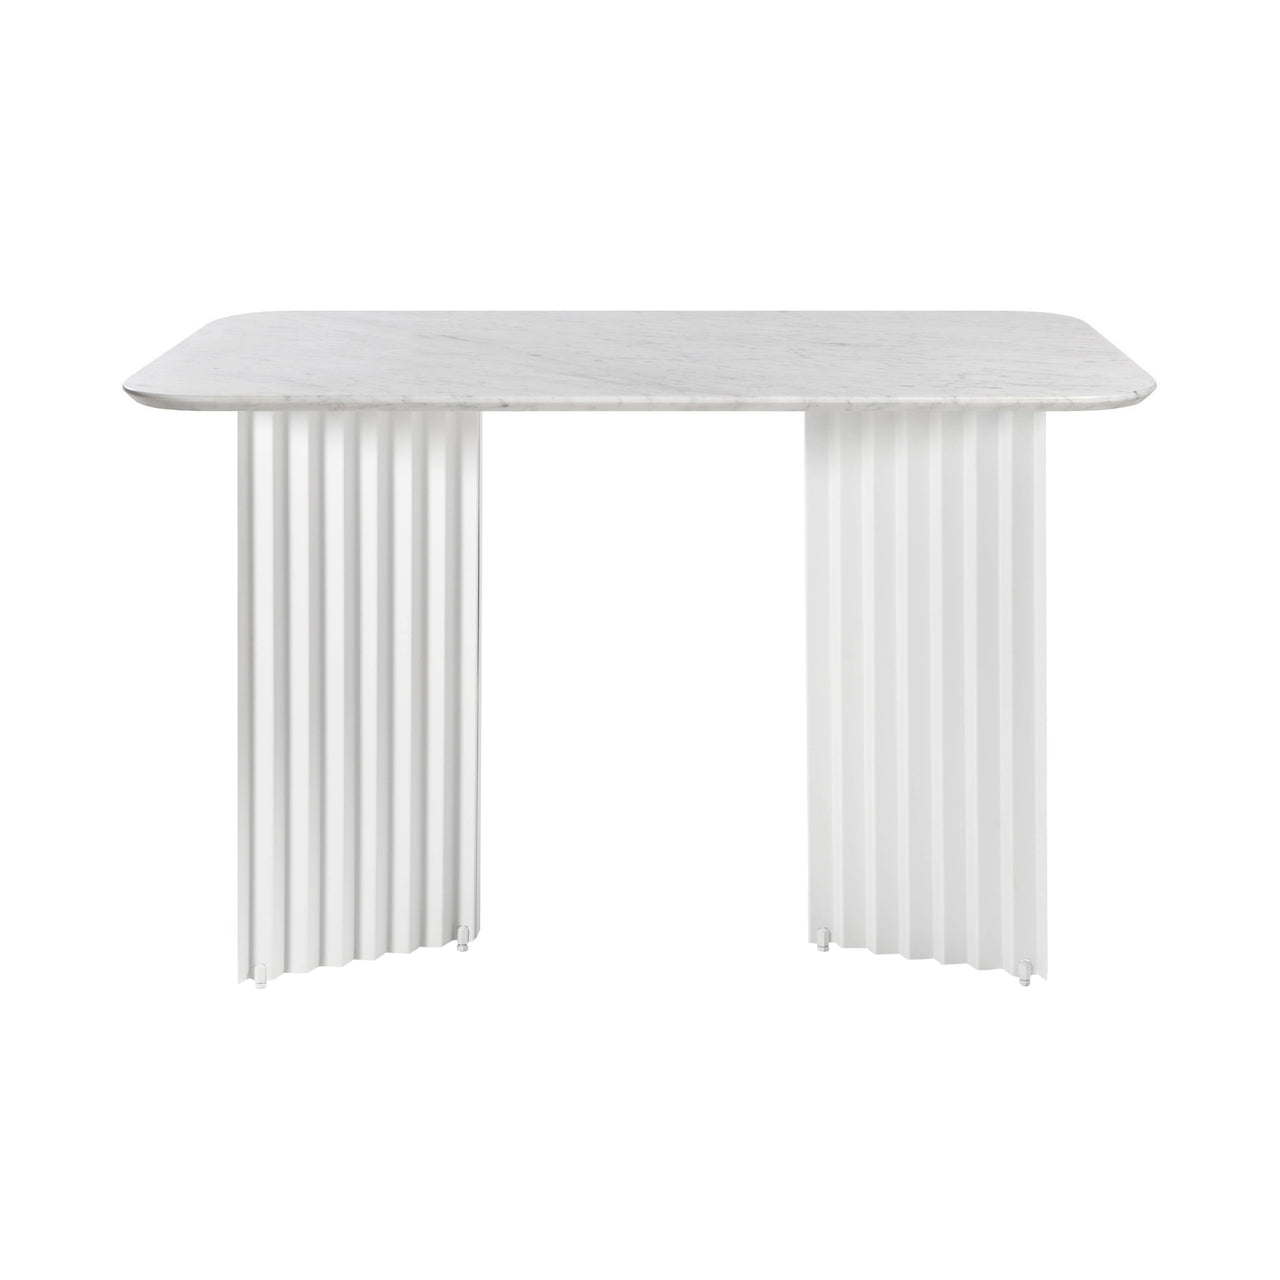 Plec Desk: White Carrara + White